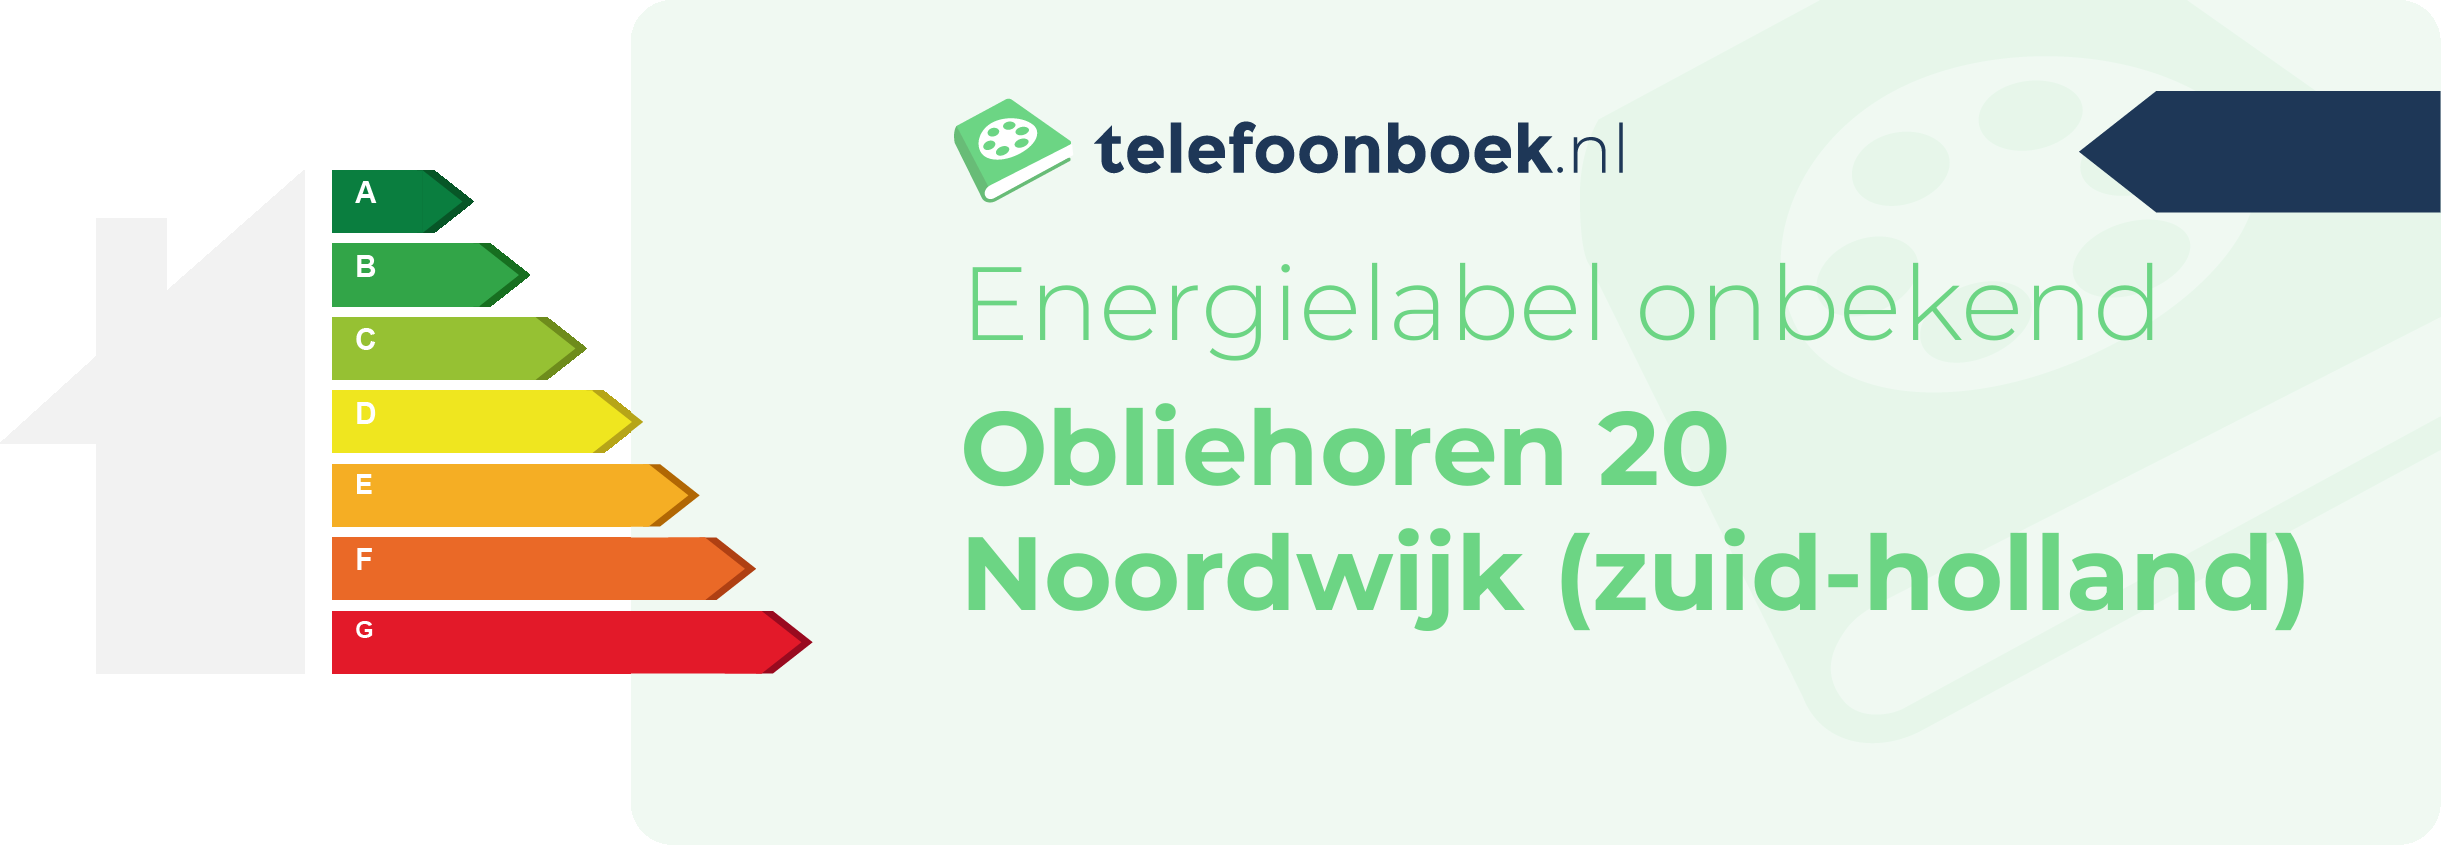 Energielabel Obliehoren 20 Noordwijk (Zuid-Holland)